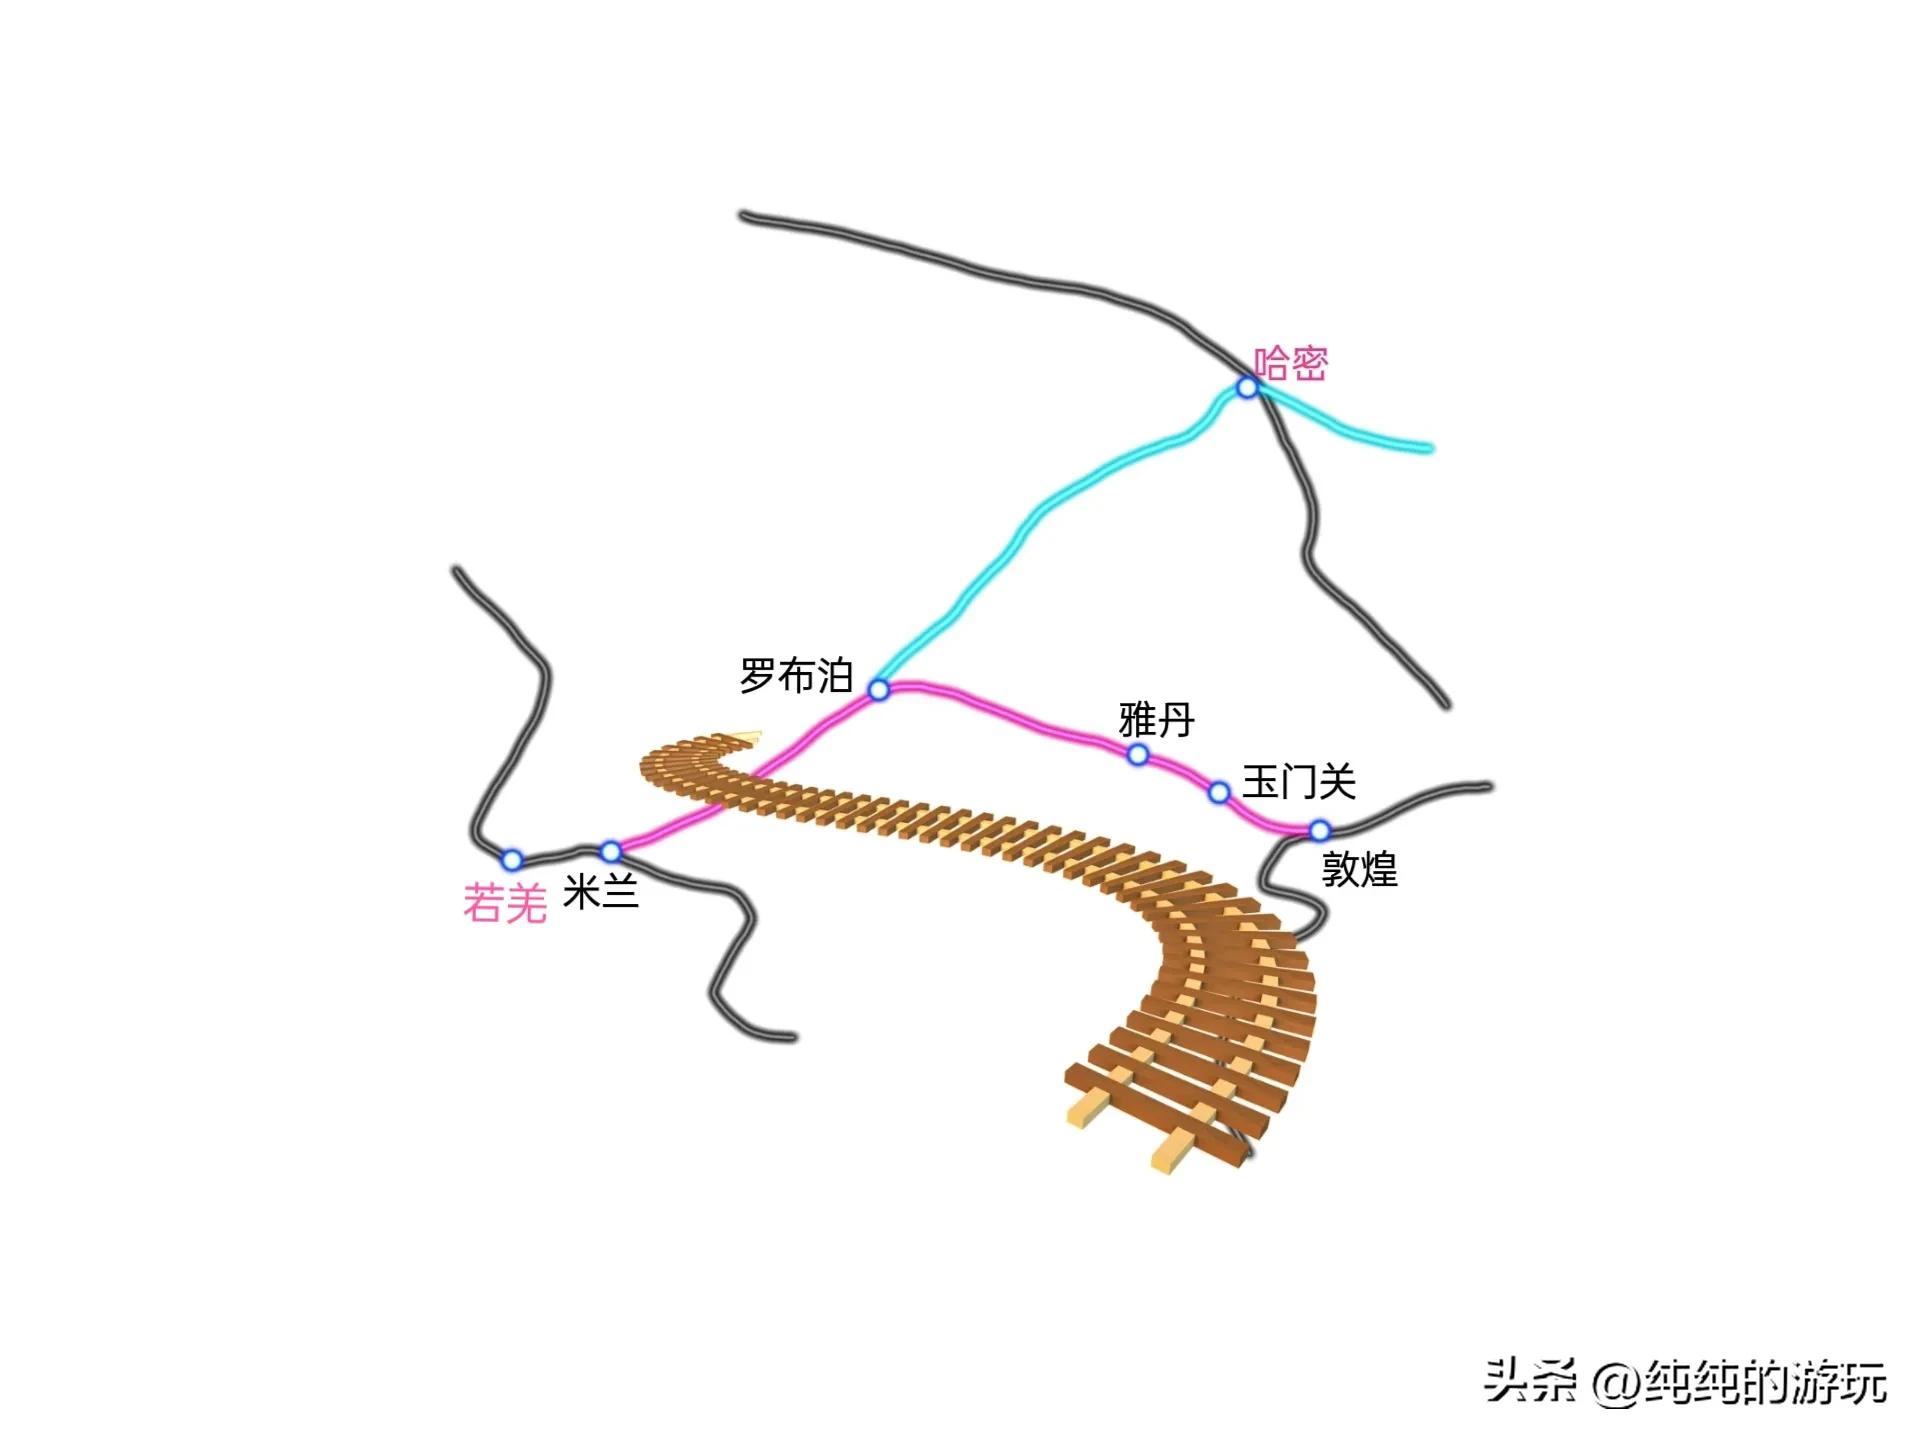 会宁铁路经过村镇(甘肃省规划中九条铁路的线路走向)